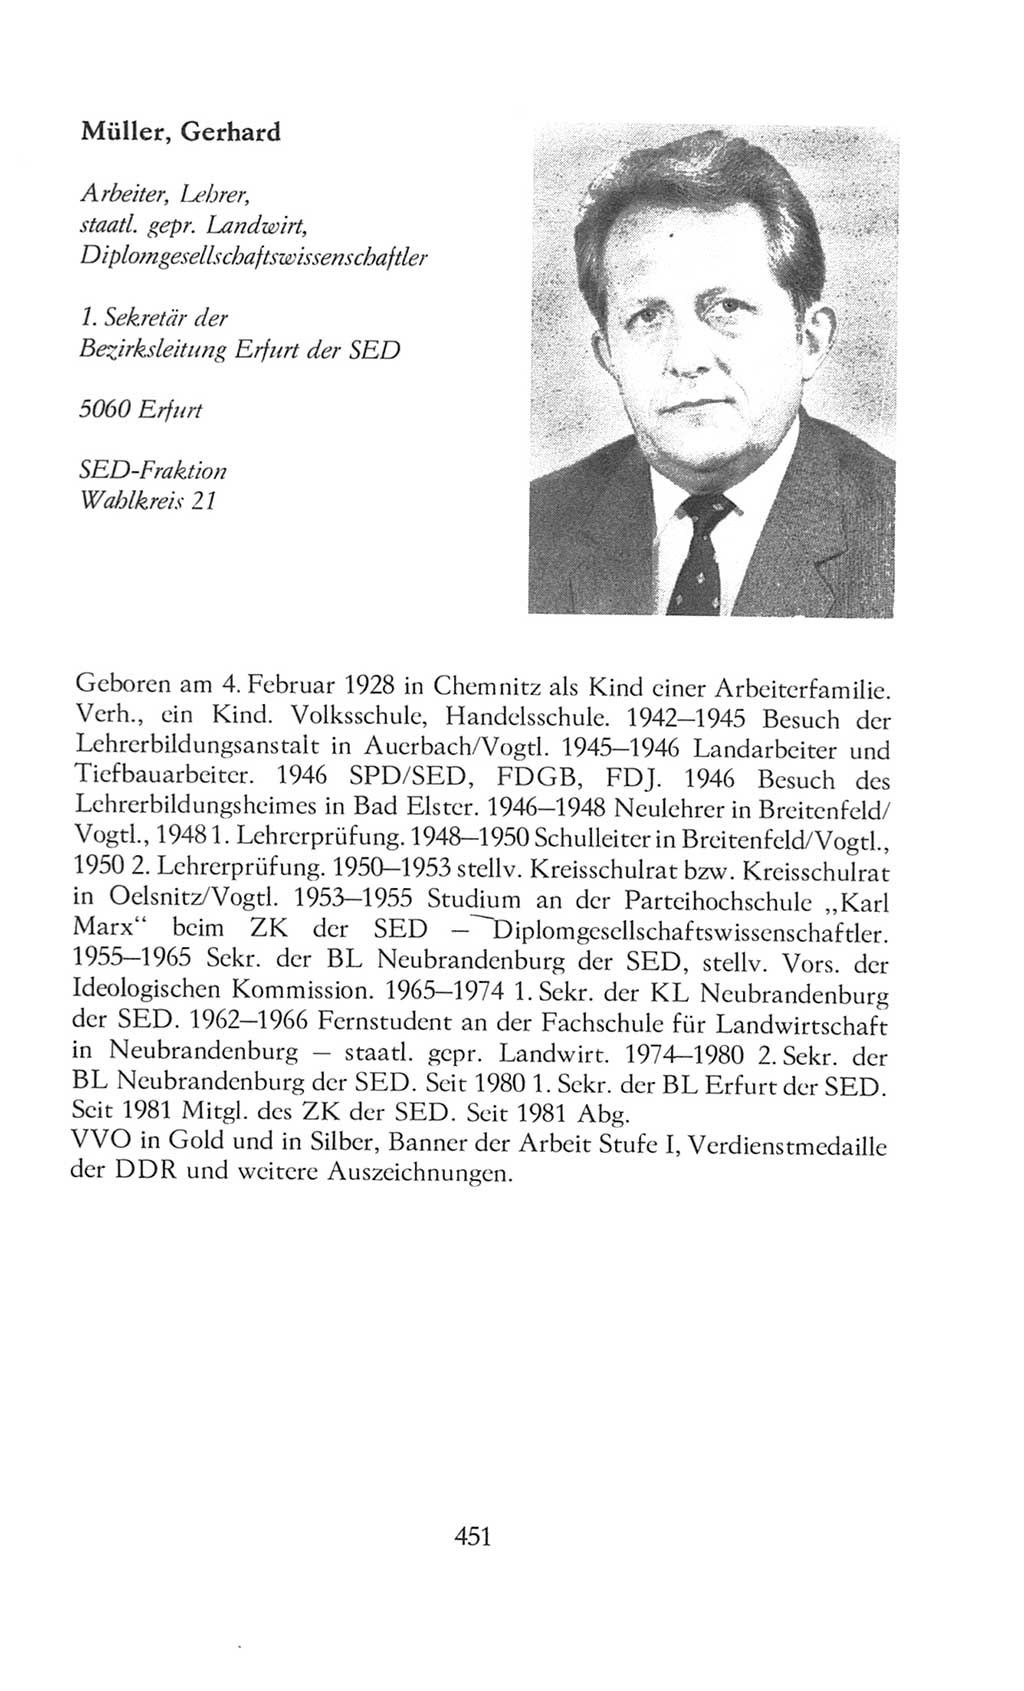 Volkskammer (VK) der Deutschen Demokratischen Republik (DDR), 8. Wahlperiode 1981-1986, Seite 451 (VK. DDR 8. WP. 1981-1986, S. 451)